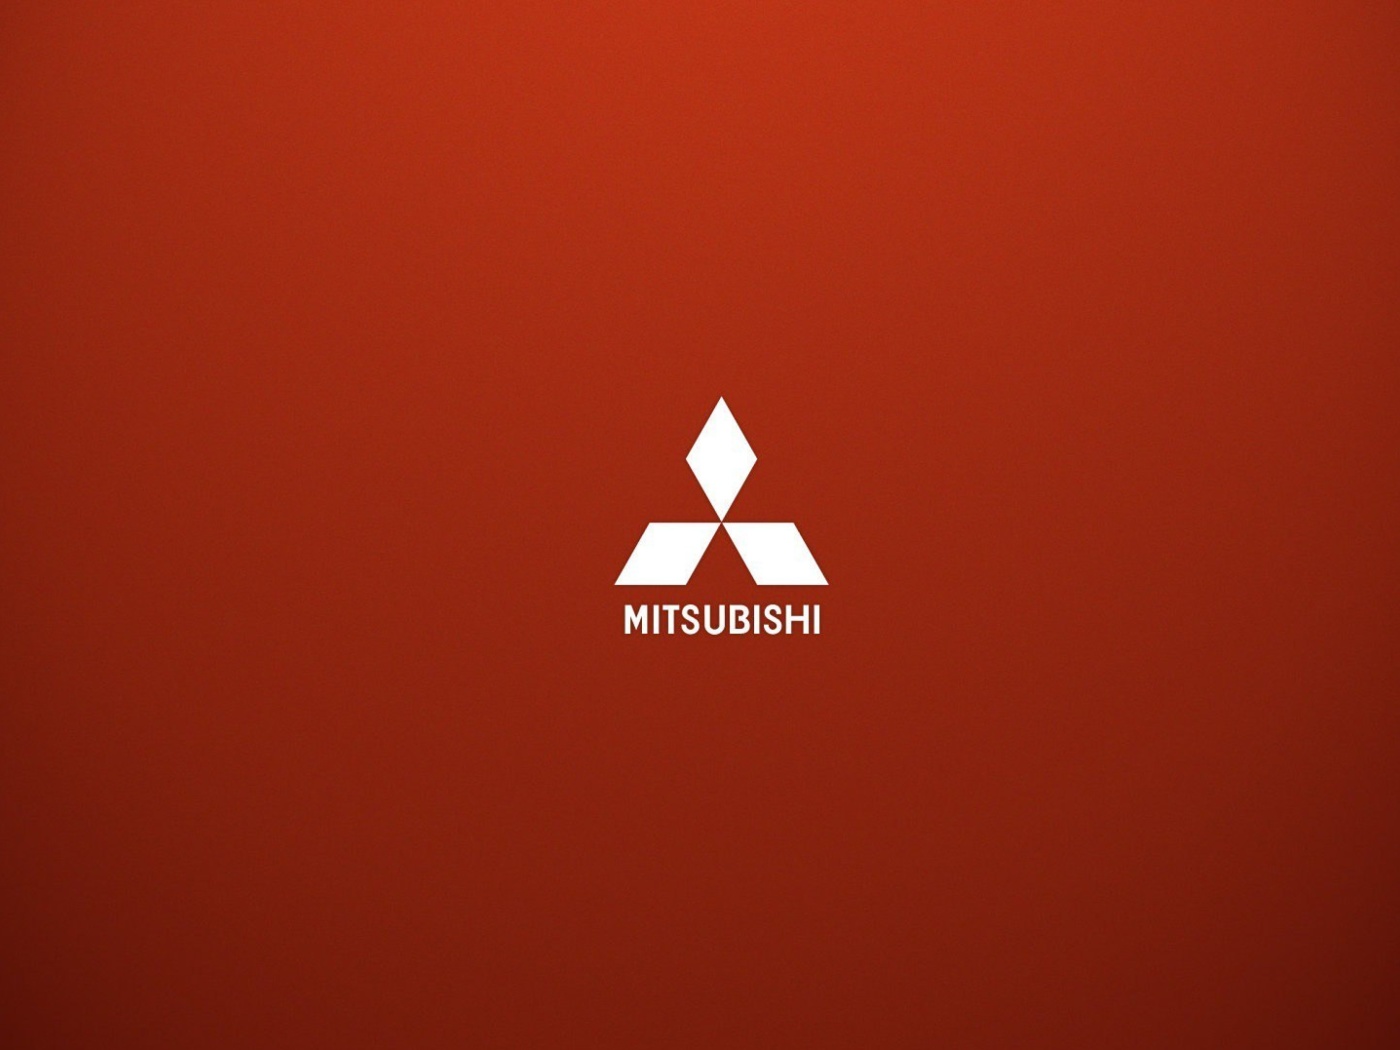 Das Mitsubishi logo Wallpaper 1400x1050